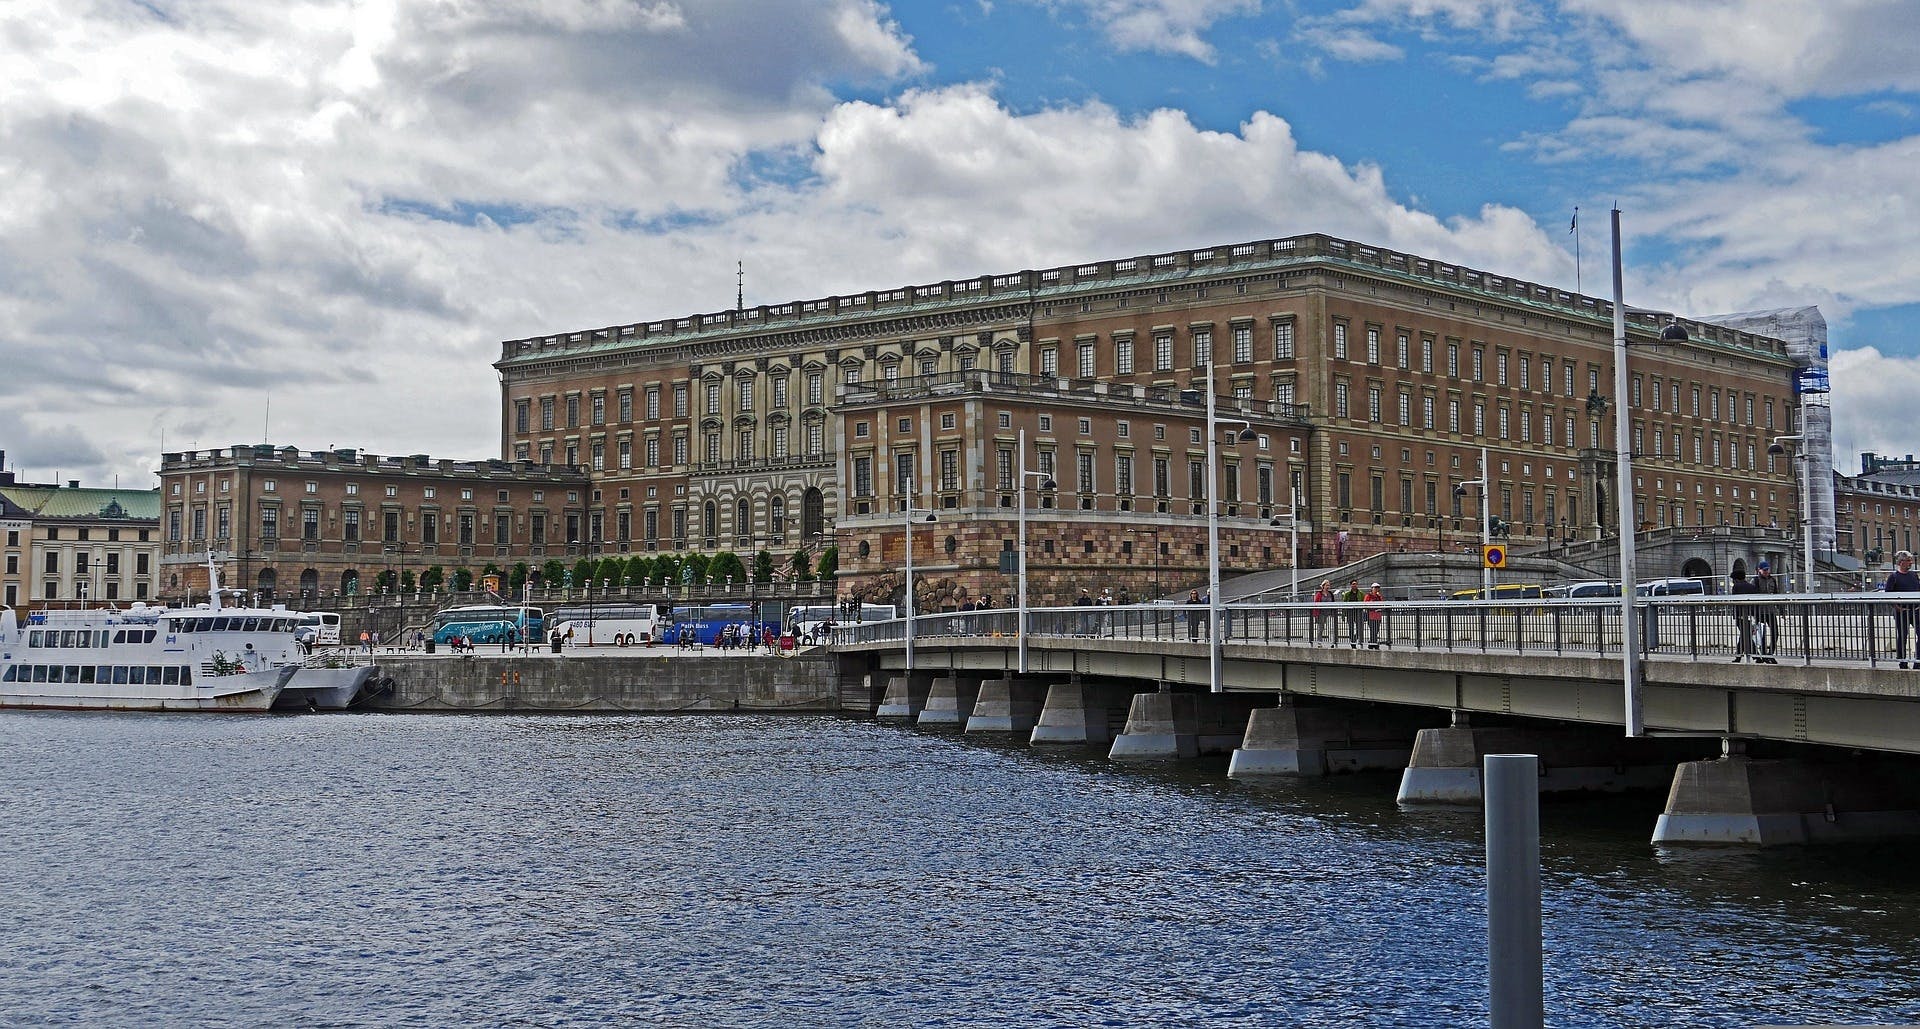 Esperienza autoguidata del mistero dell'omicidio presso il Palazzo Reale di Stoccolma